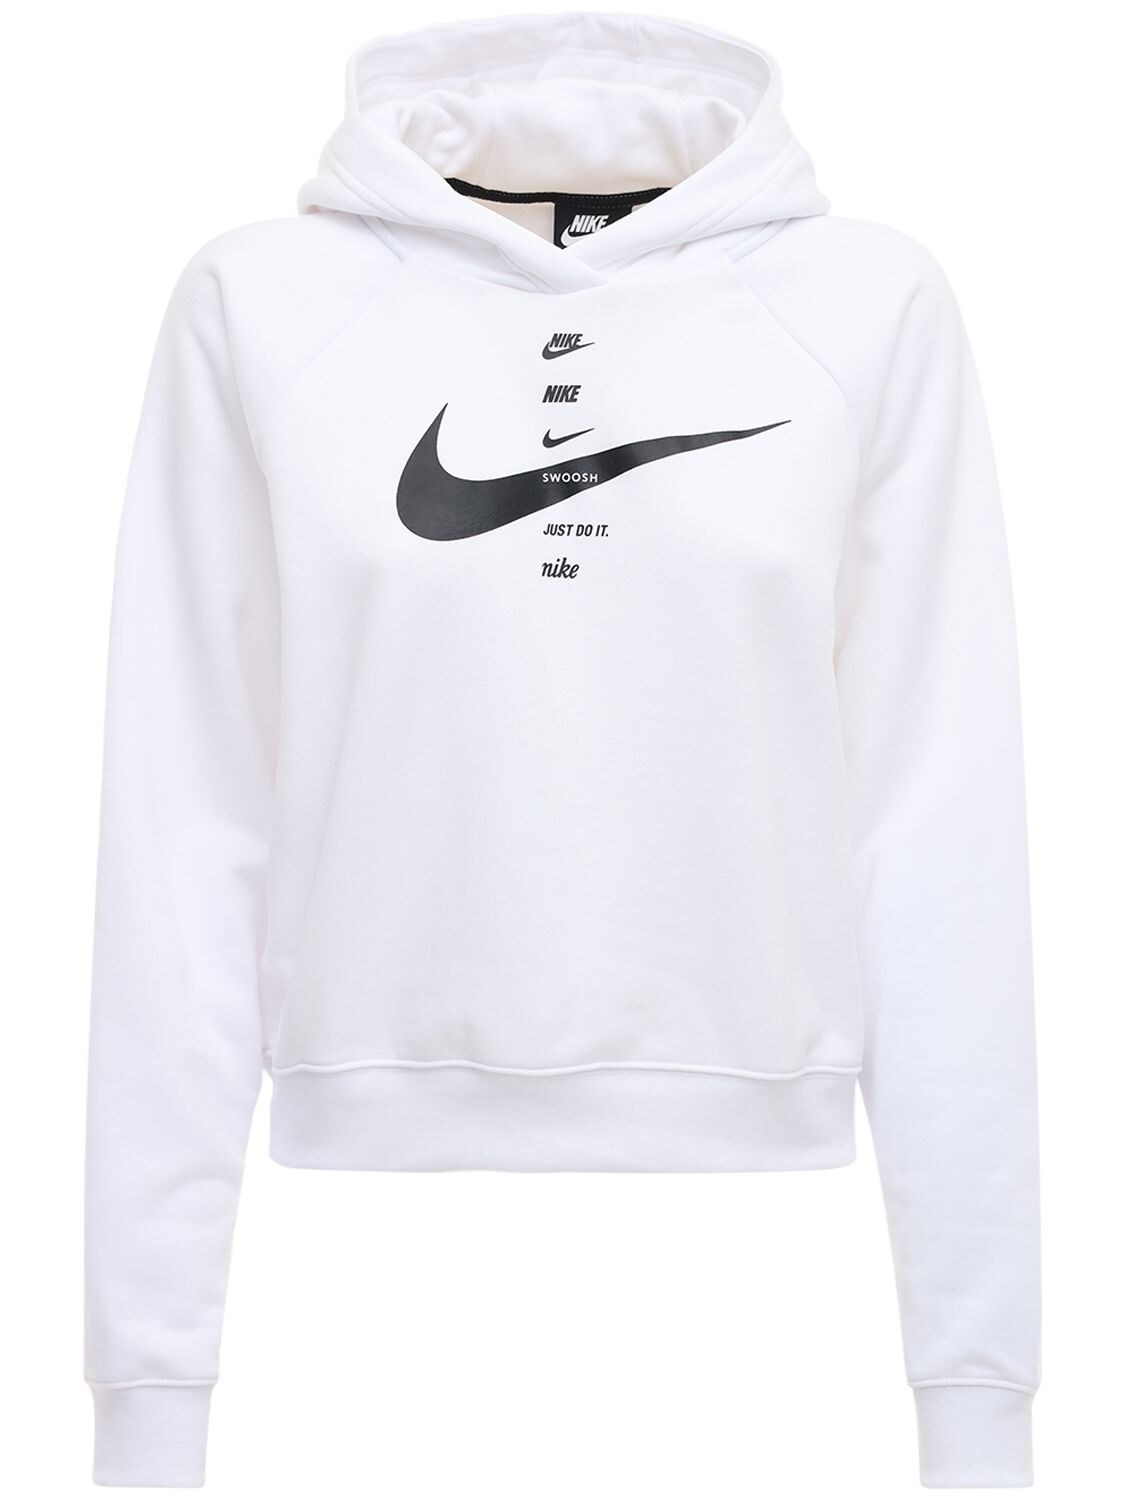 Nike Swoosh Print Sweatshirt Hoodie In White